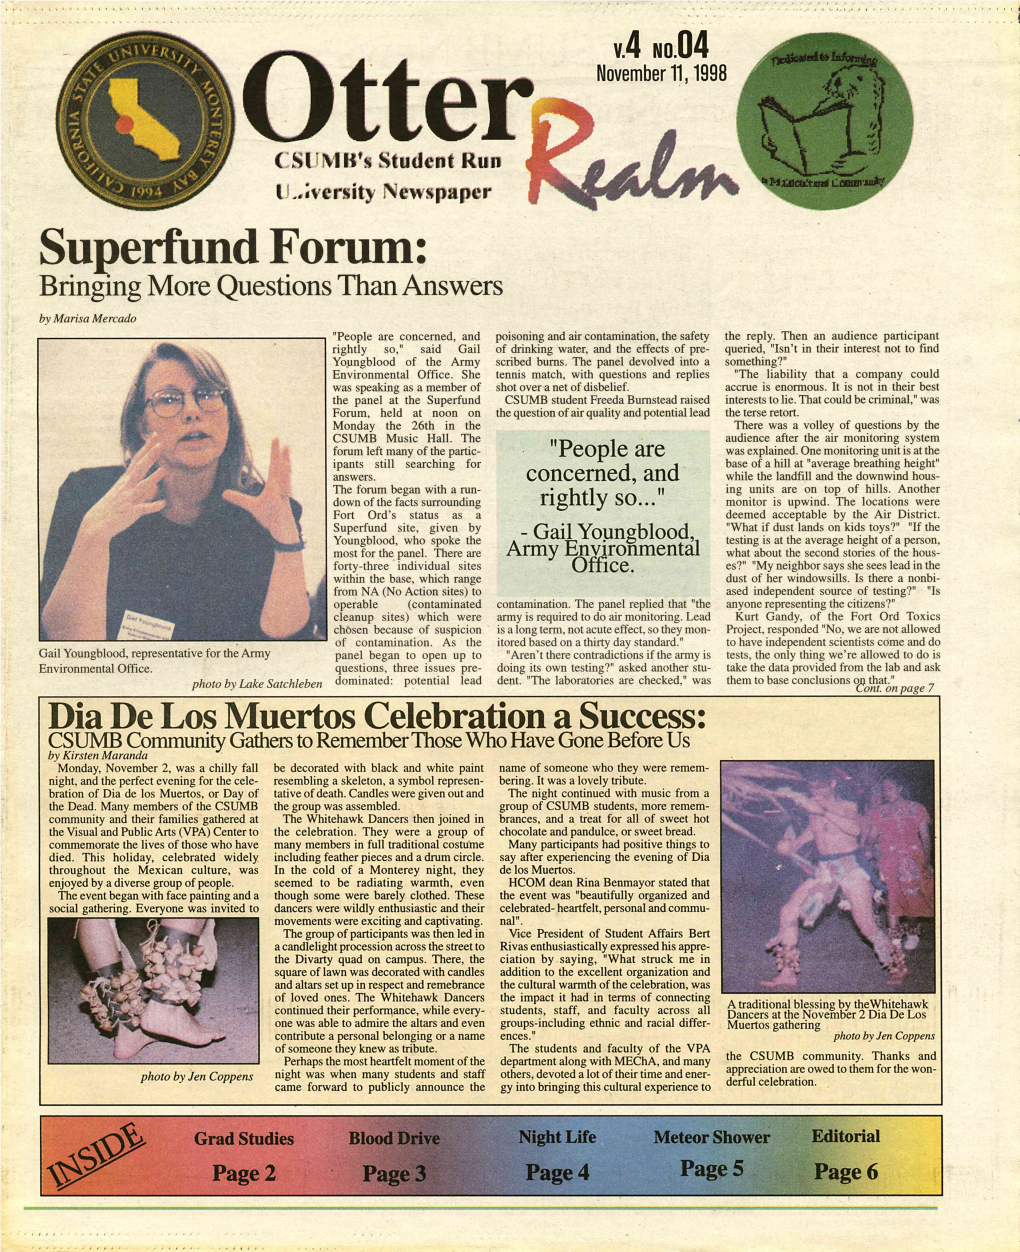 Otter Realm, November 11, 1998 (Vol. 4 No. 4)